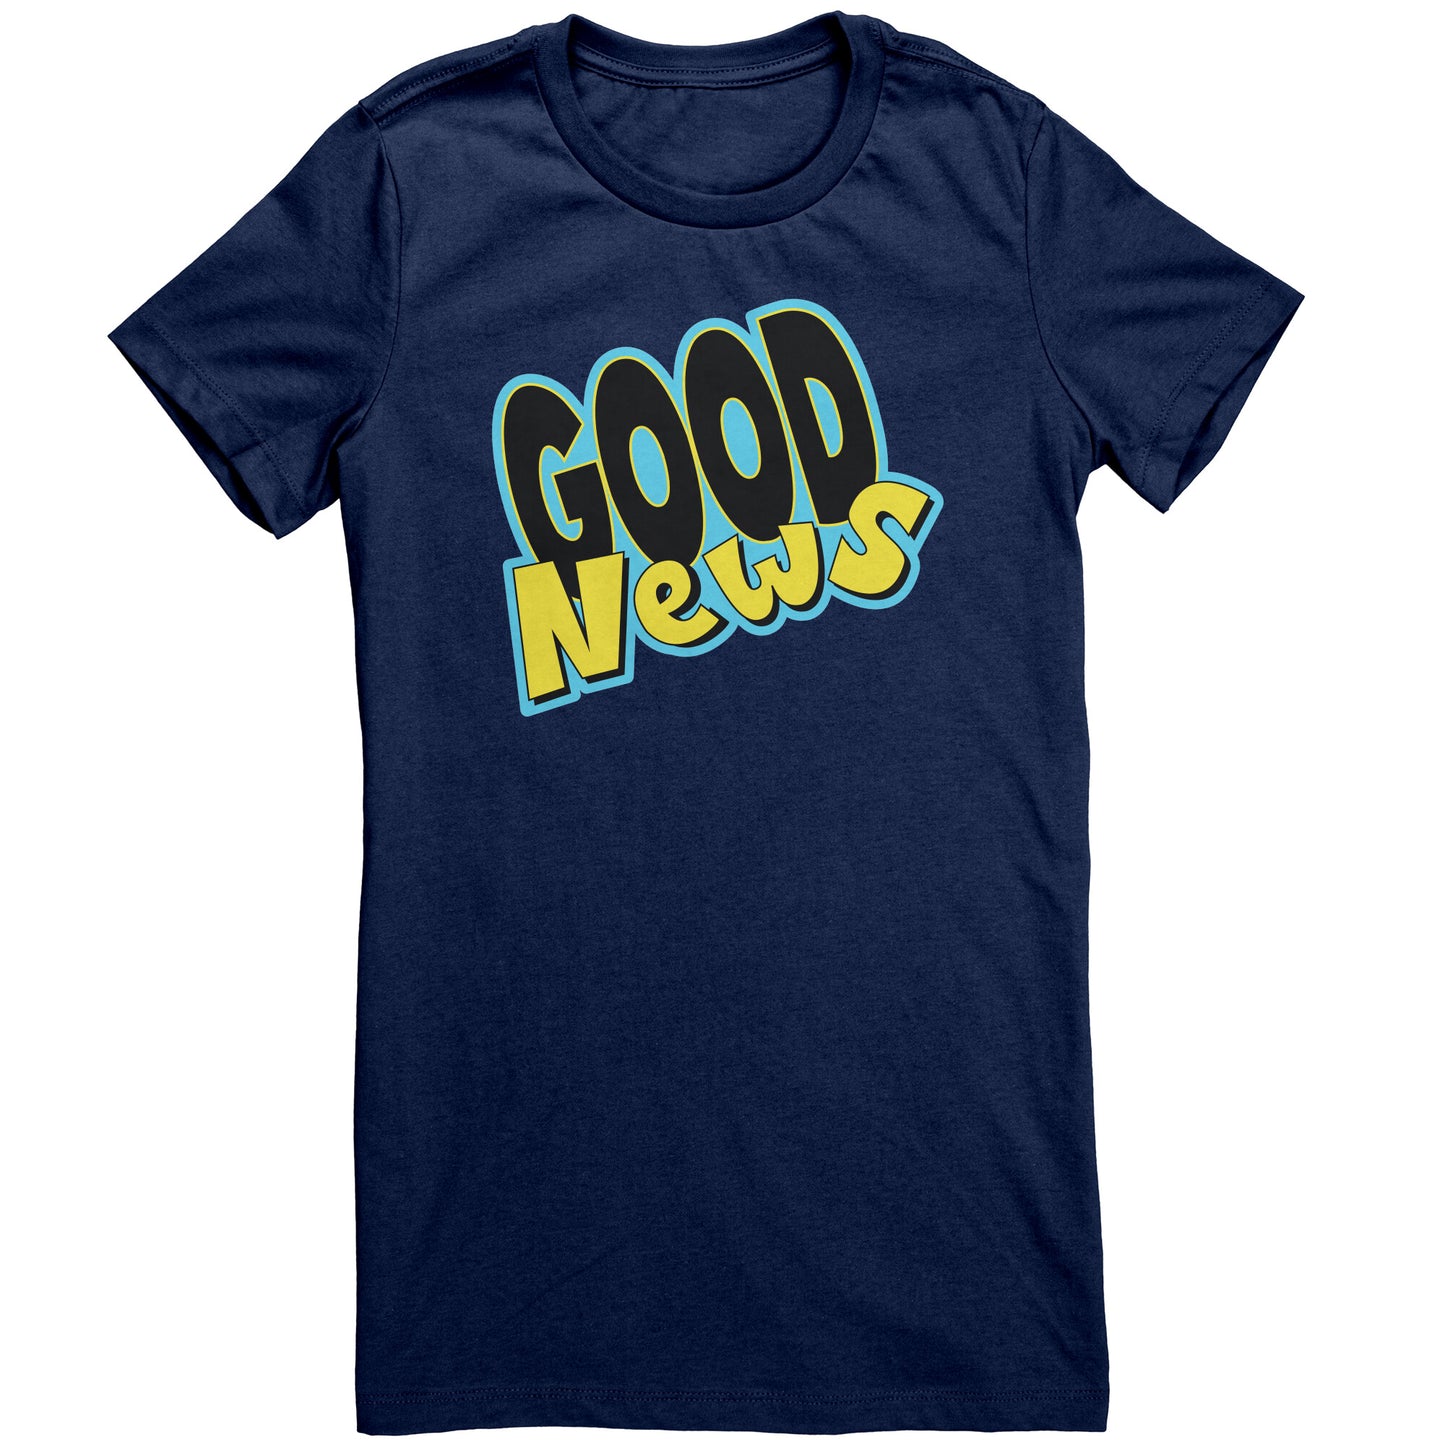 Good News t-shirt